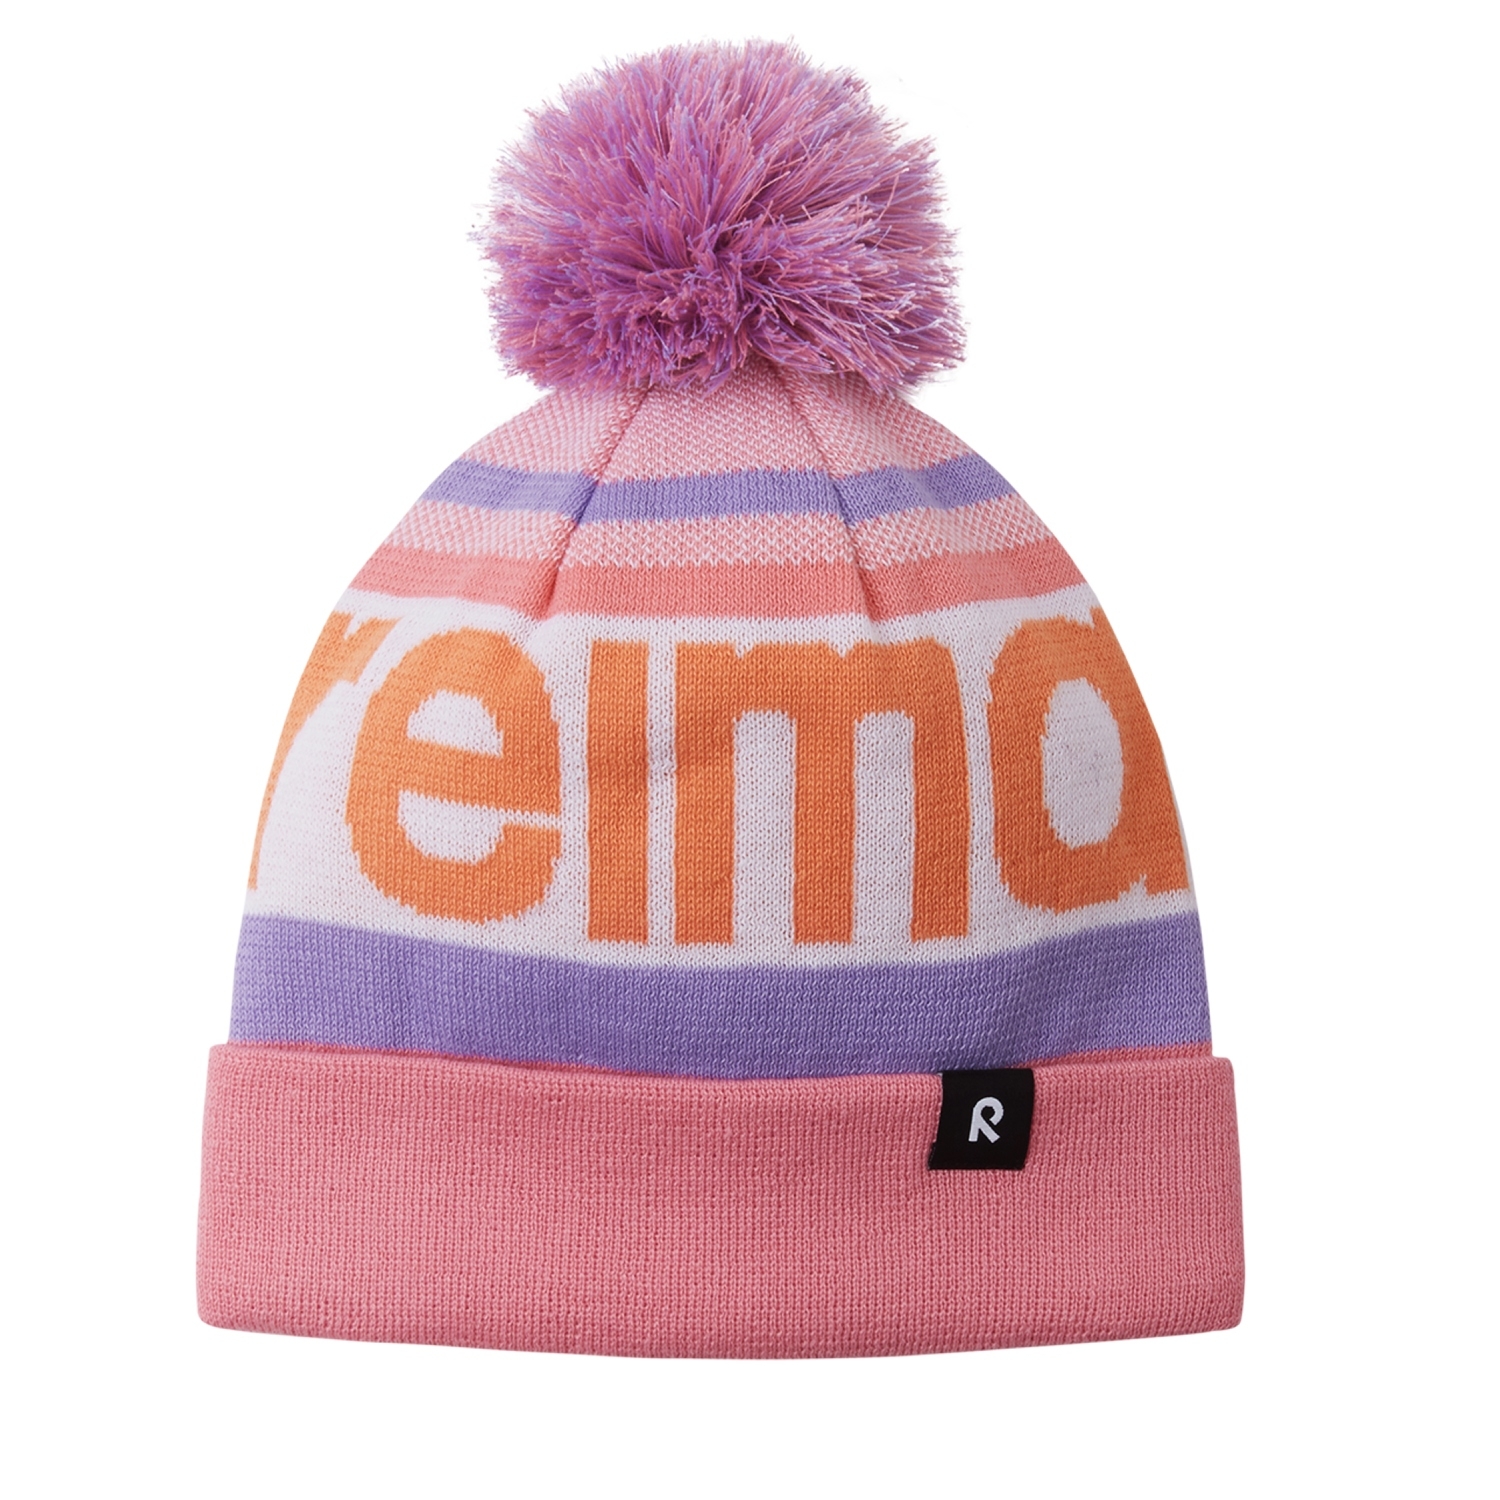 Dziecięca czapka zimowa Reima Taasko sunset pink - 48/50 cm